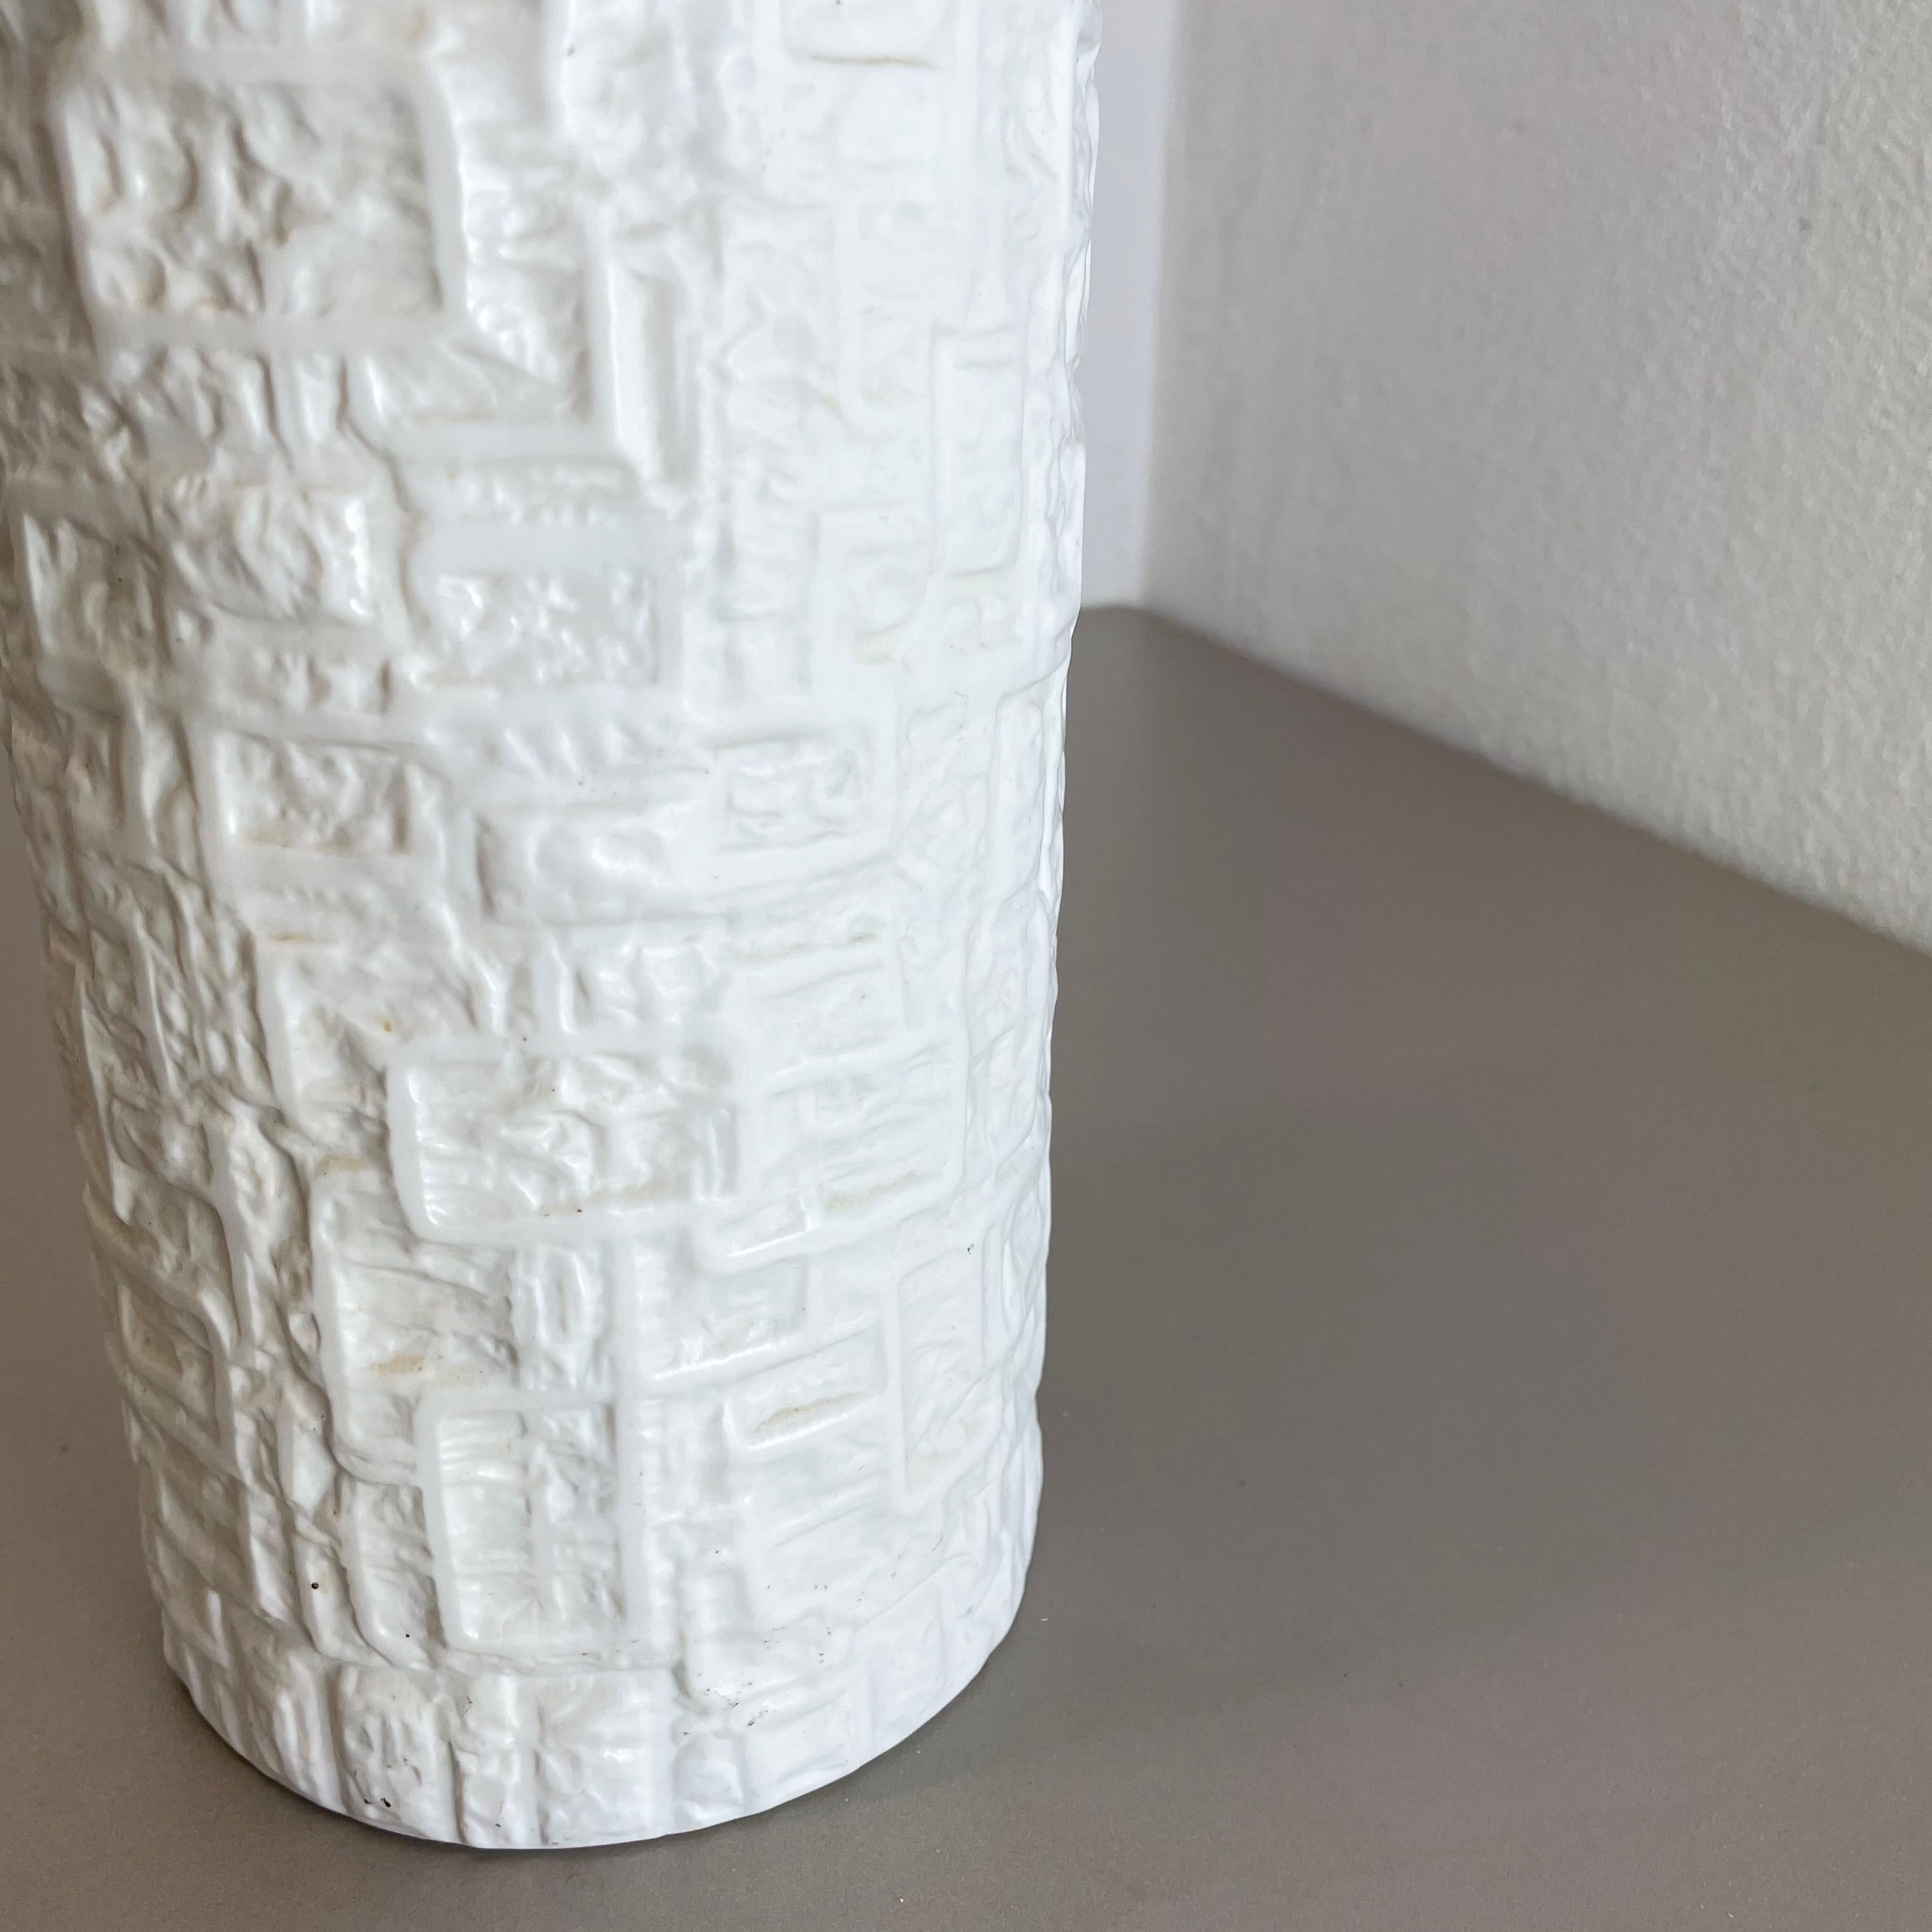 Large OP Art Vase Porcelain Vase by Martin Freyer for Rosenthal, Germany For Sale 7